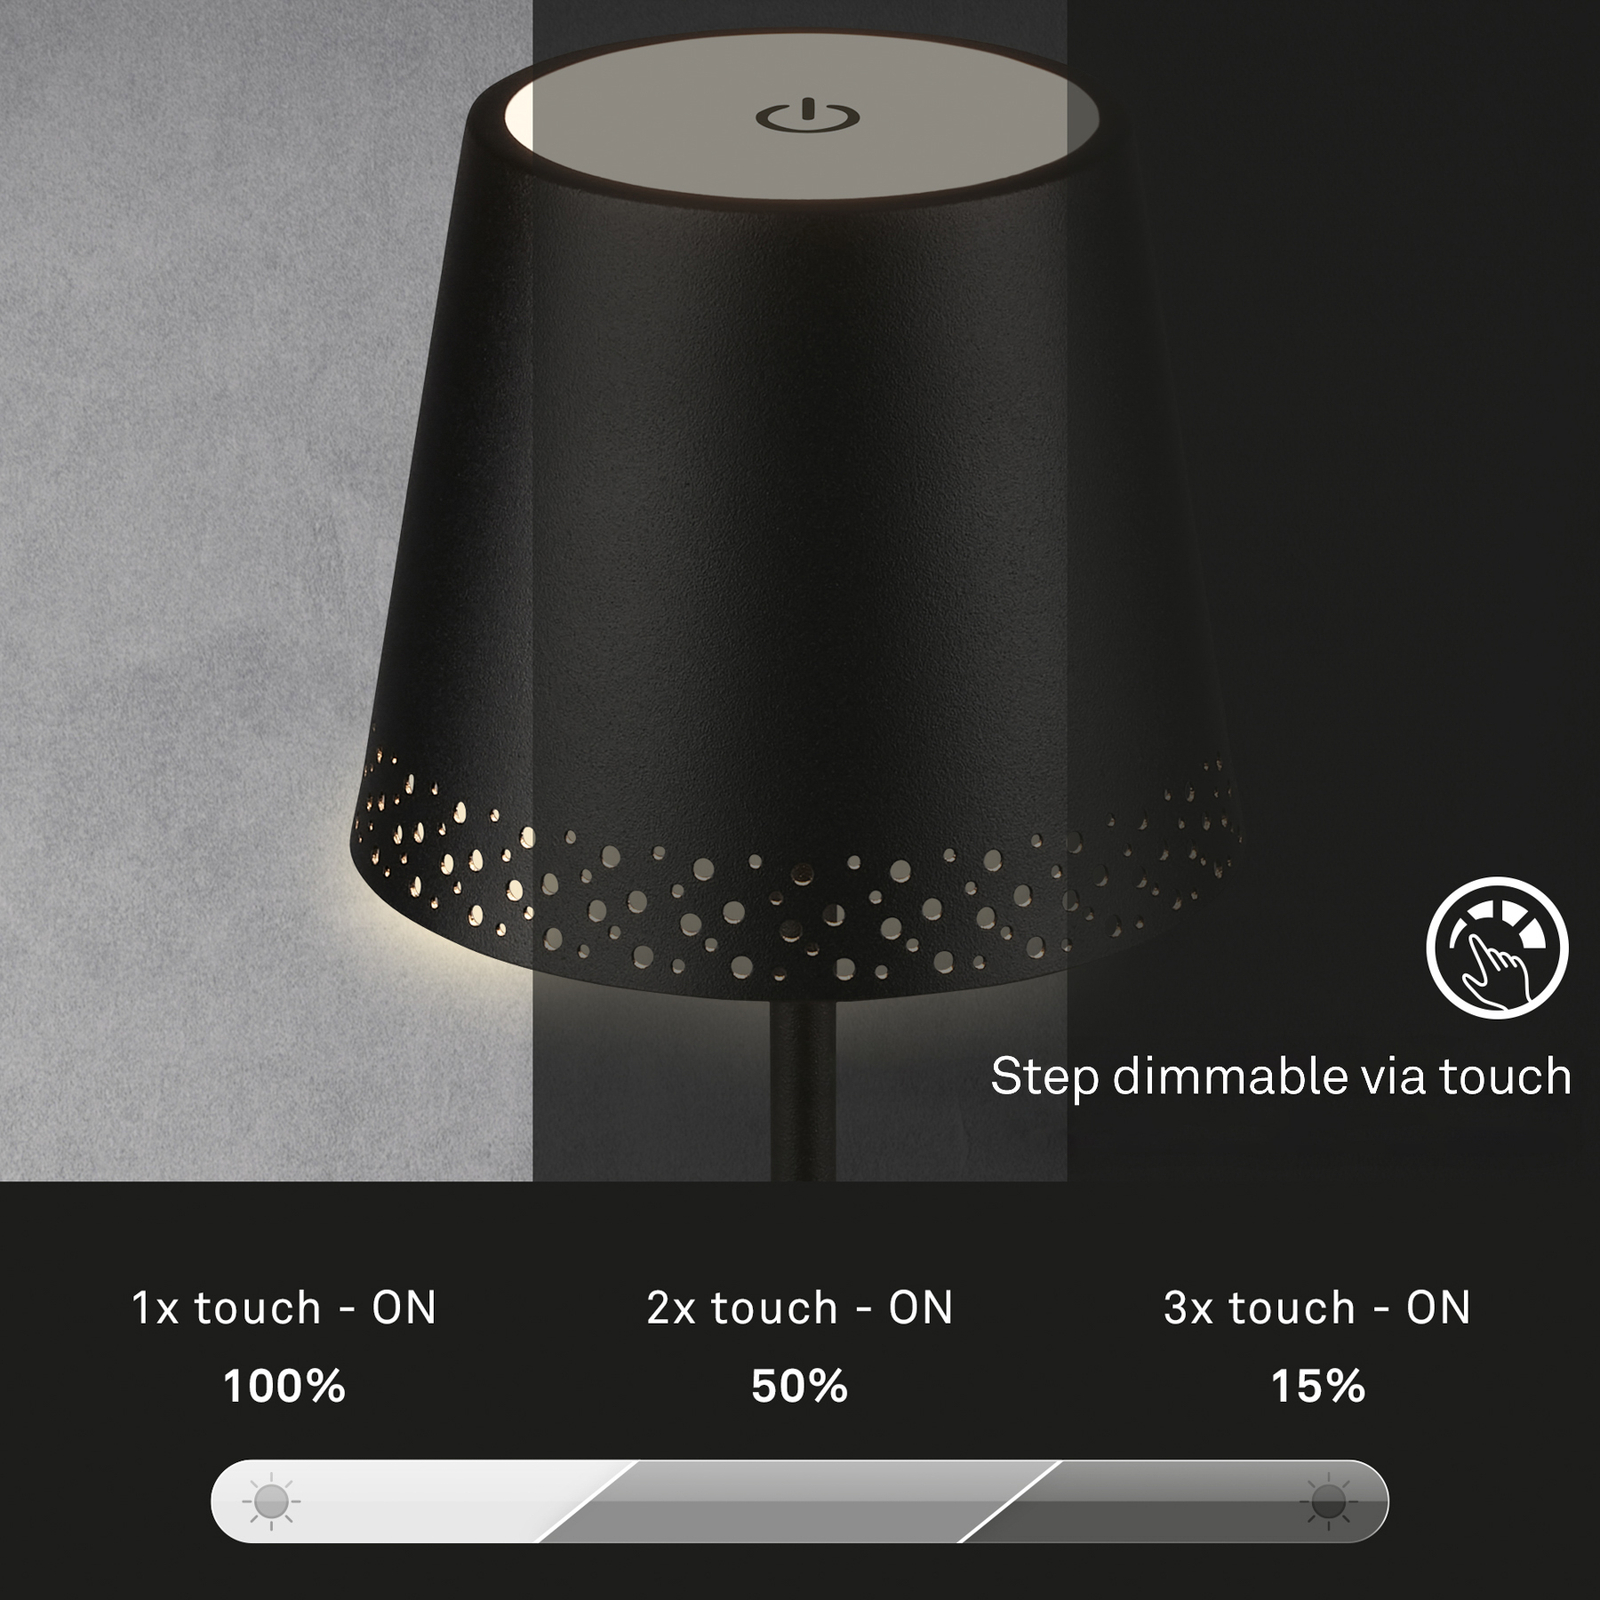 LED stolní lampa Kiki s baterií 3 000K, černá